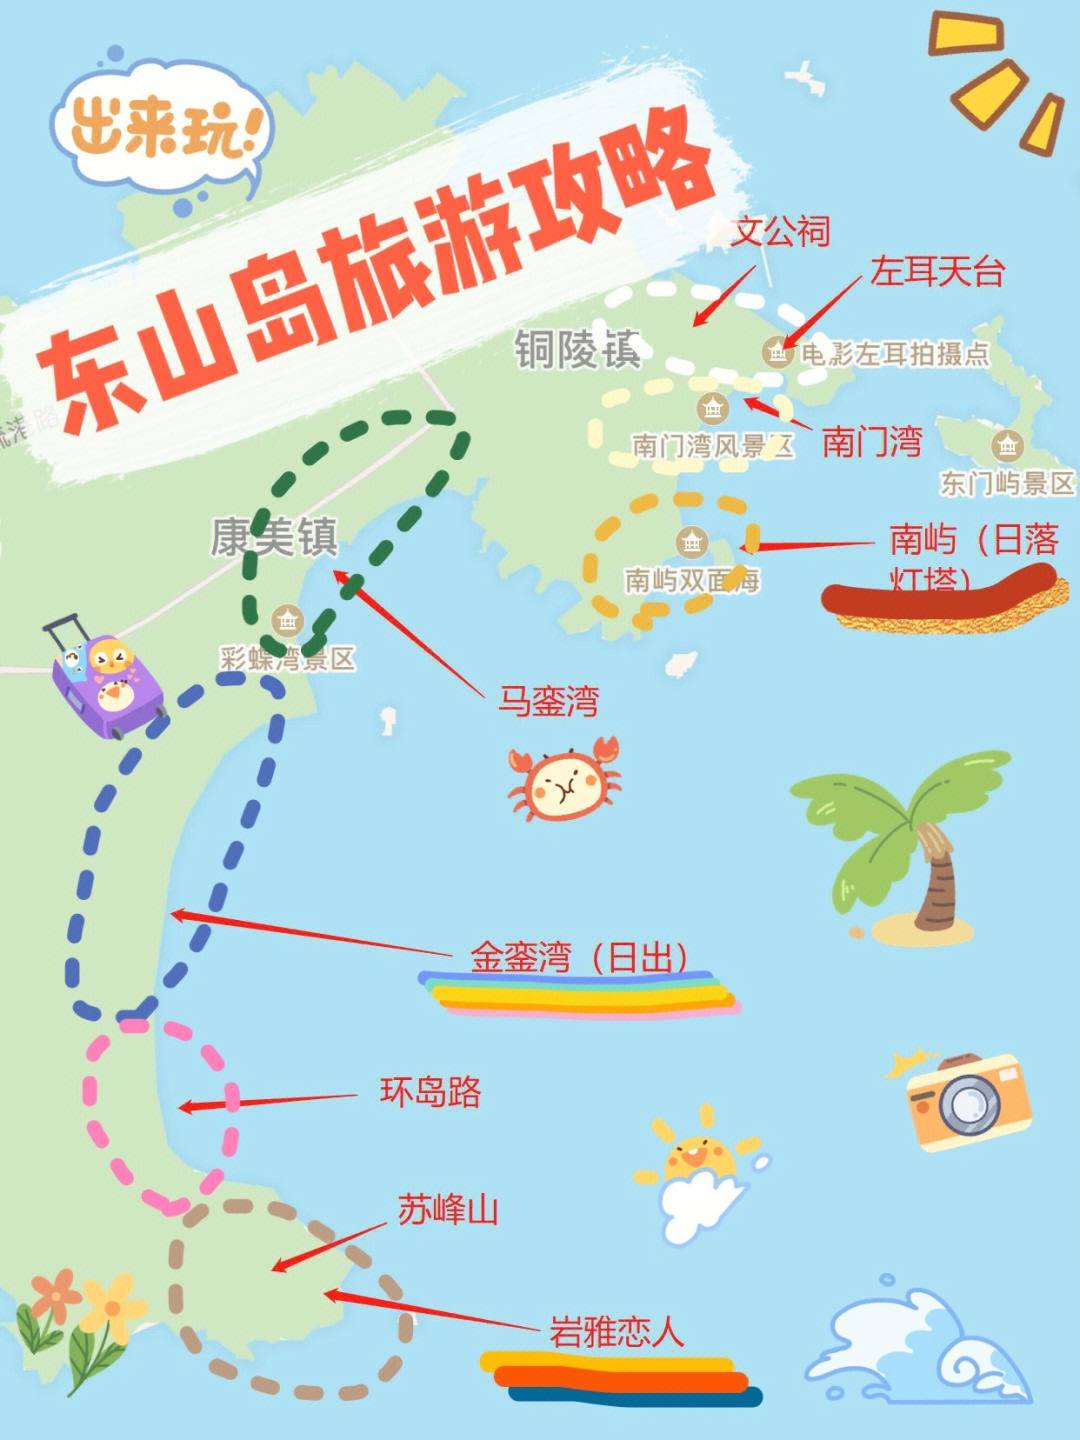 东山县各镇地图图片